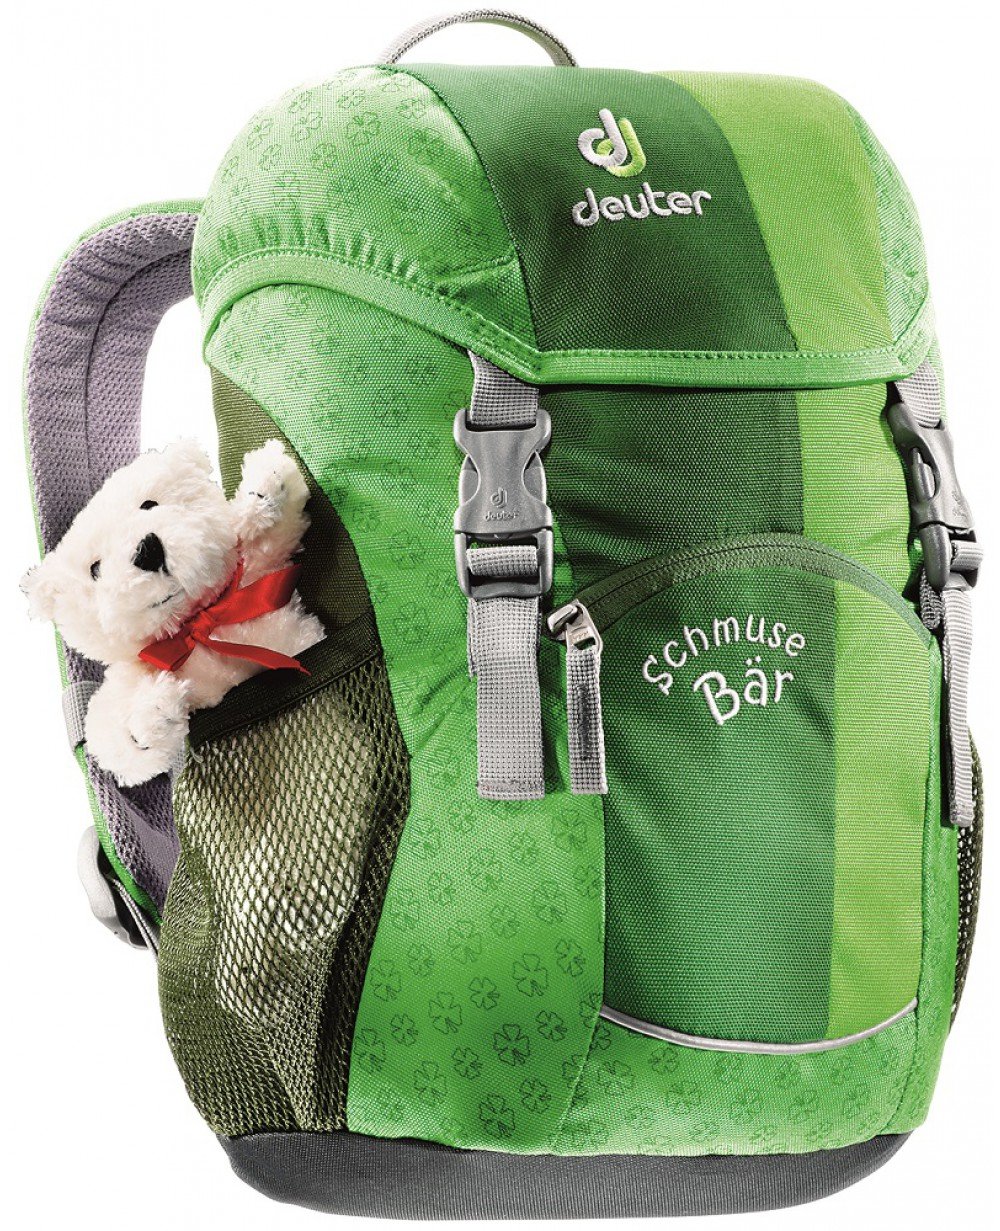 Велосипедный рюкзак Deuter Schmusebar, детский, 34х20х16, 8 л, зеленый, 36003_2004